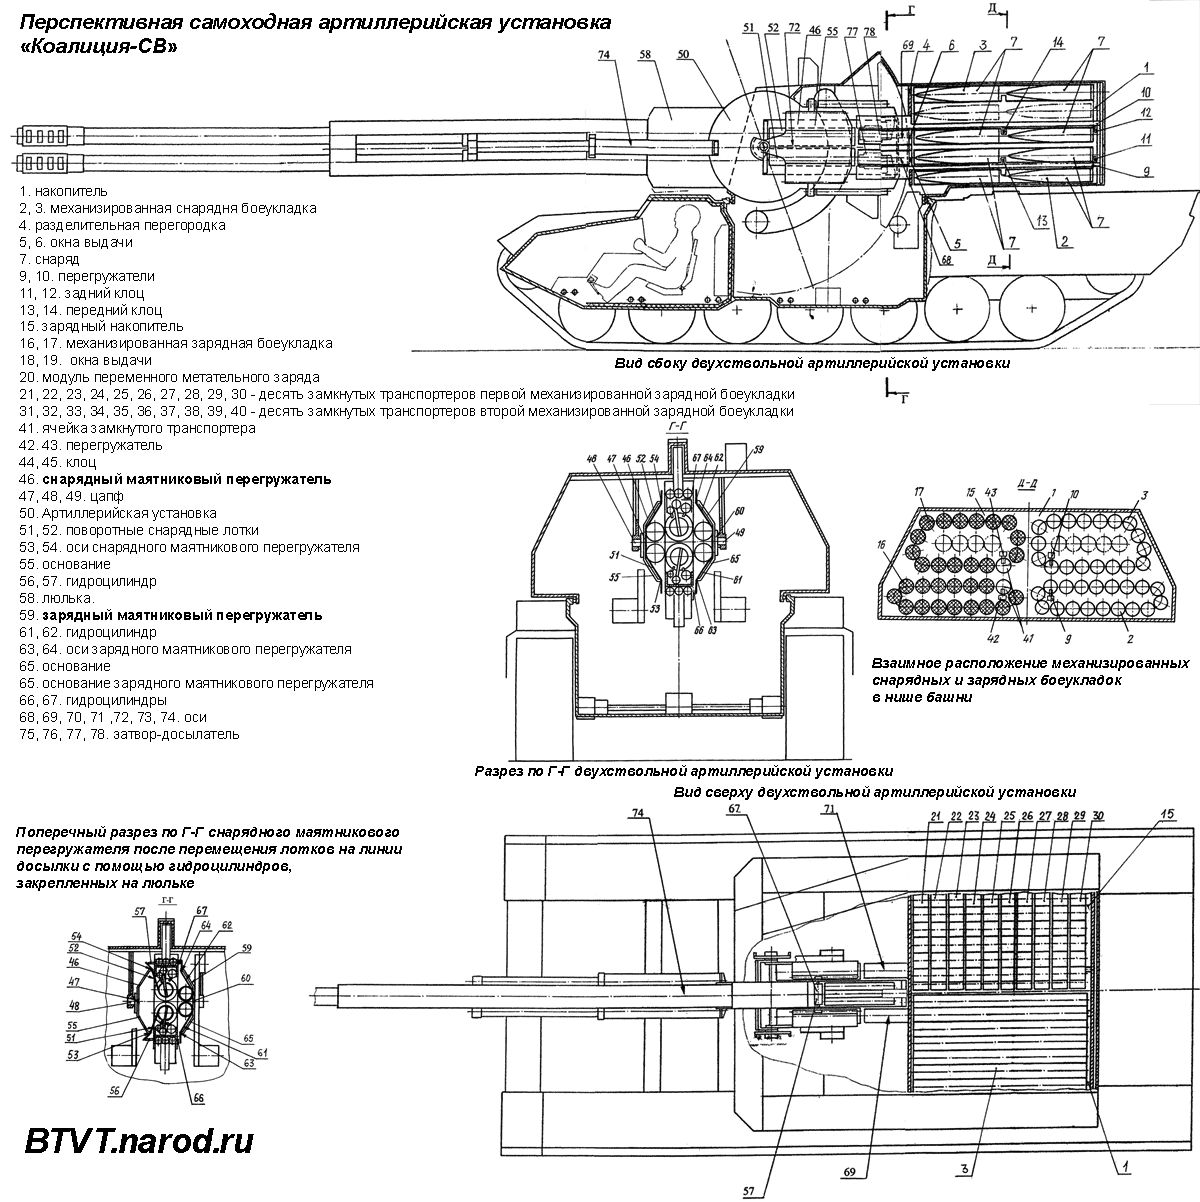 Самоходная артиллерийская установка "Коалиция-СВ"